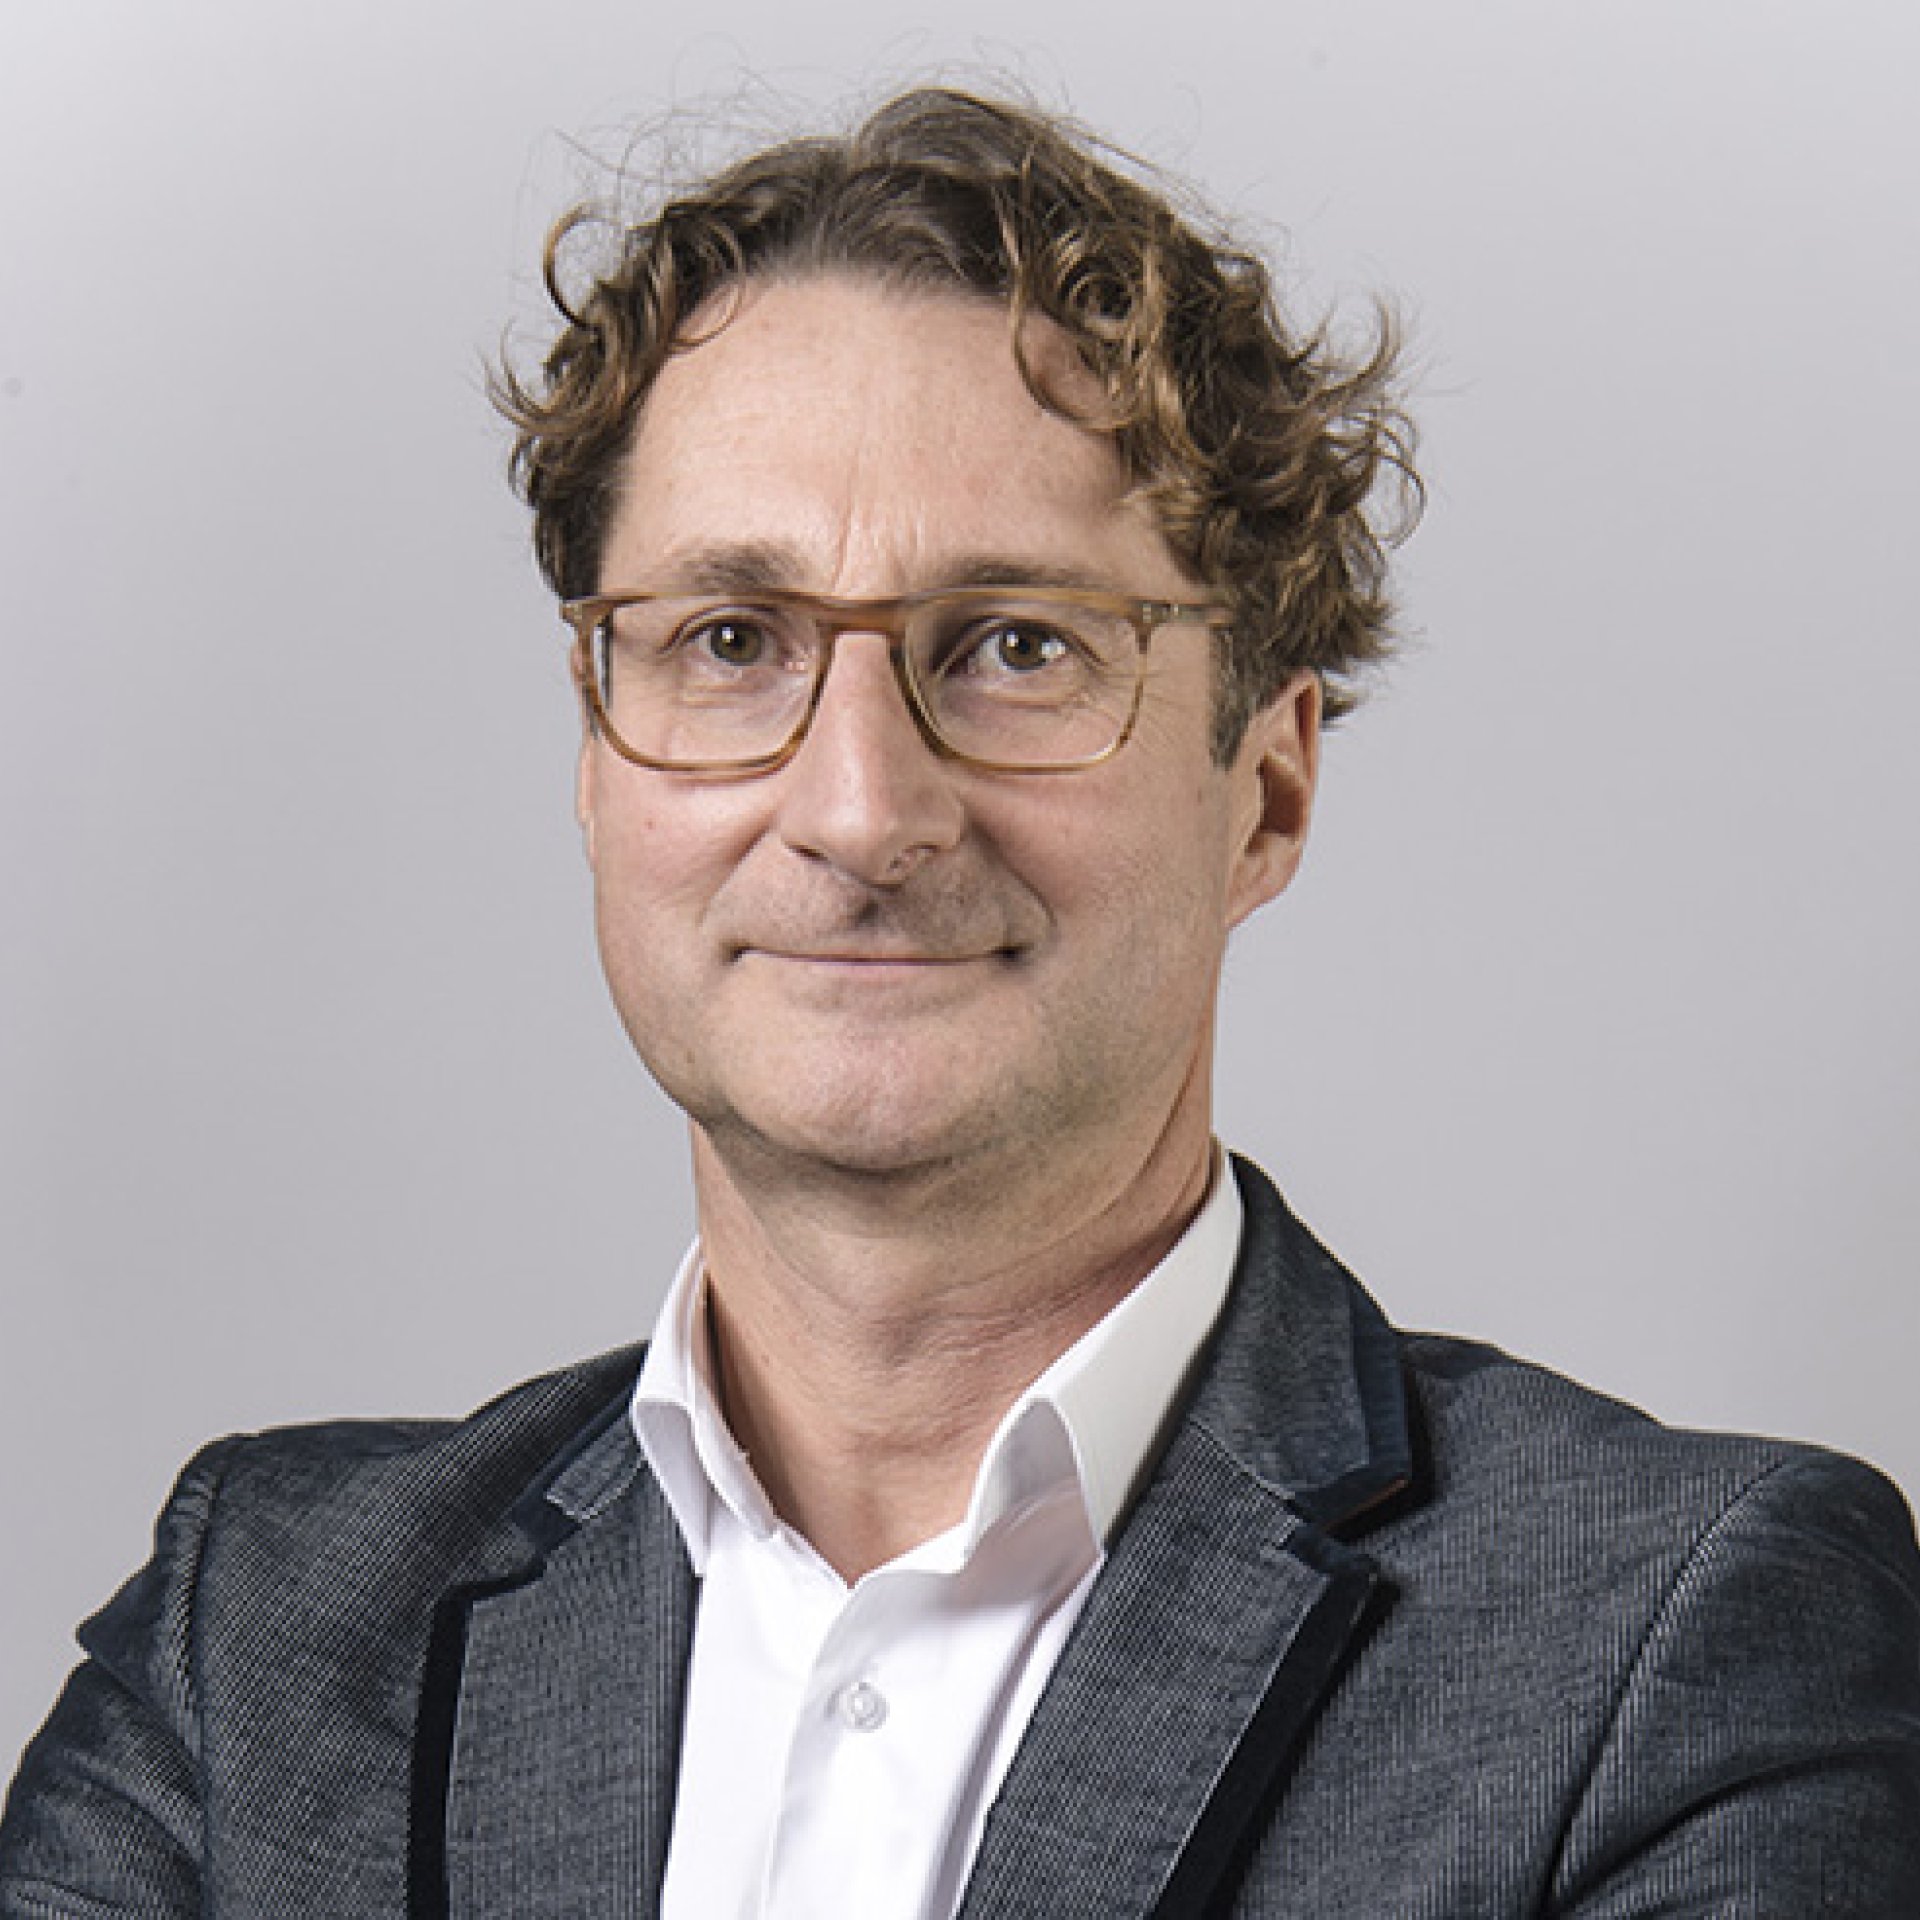 Christophe Durand, trésorier adjoint CCI Nantes St-Nazaire, "Mobilités durables".